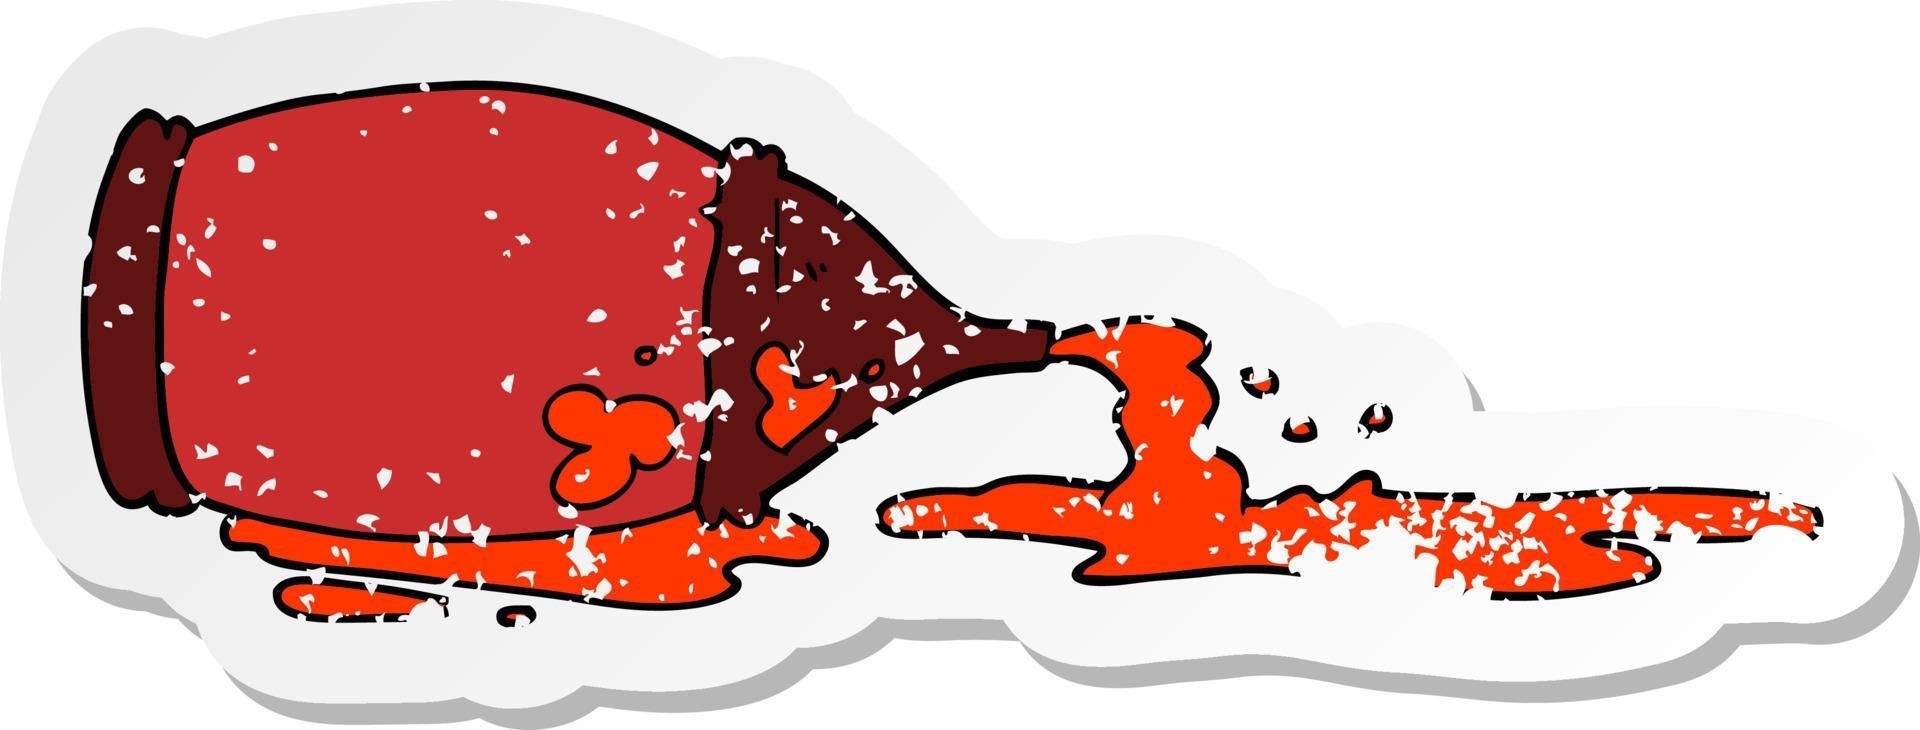 adesivo angustiado de uma garrafa de ketchup derramada de desenho animado vetor